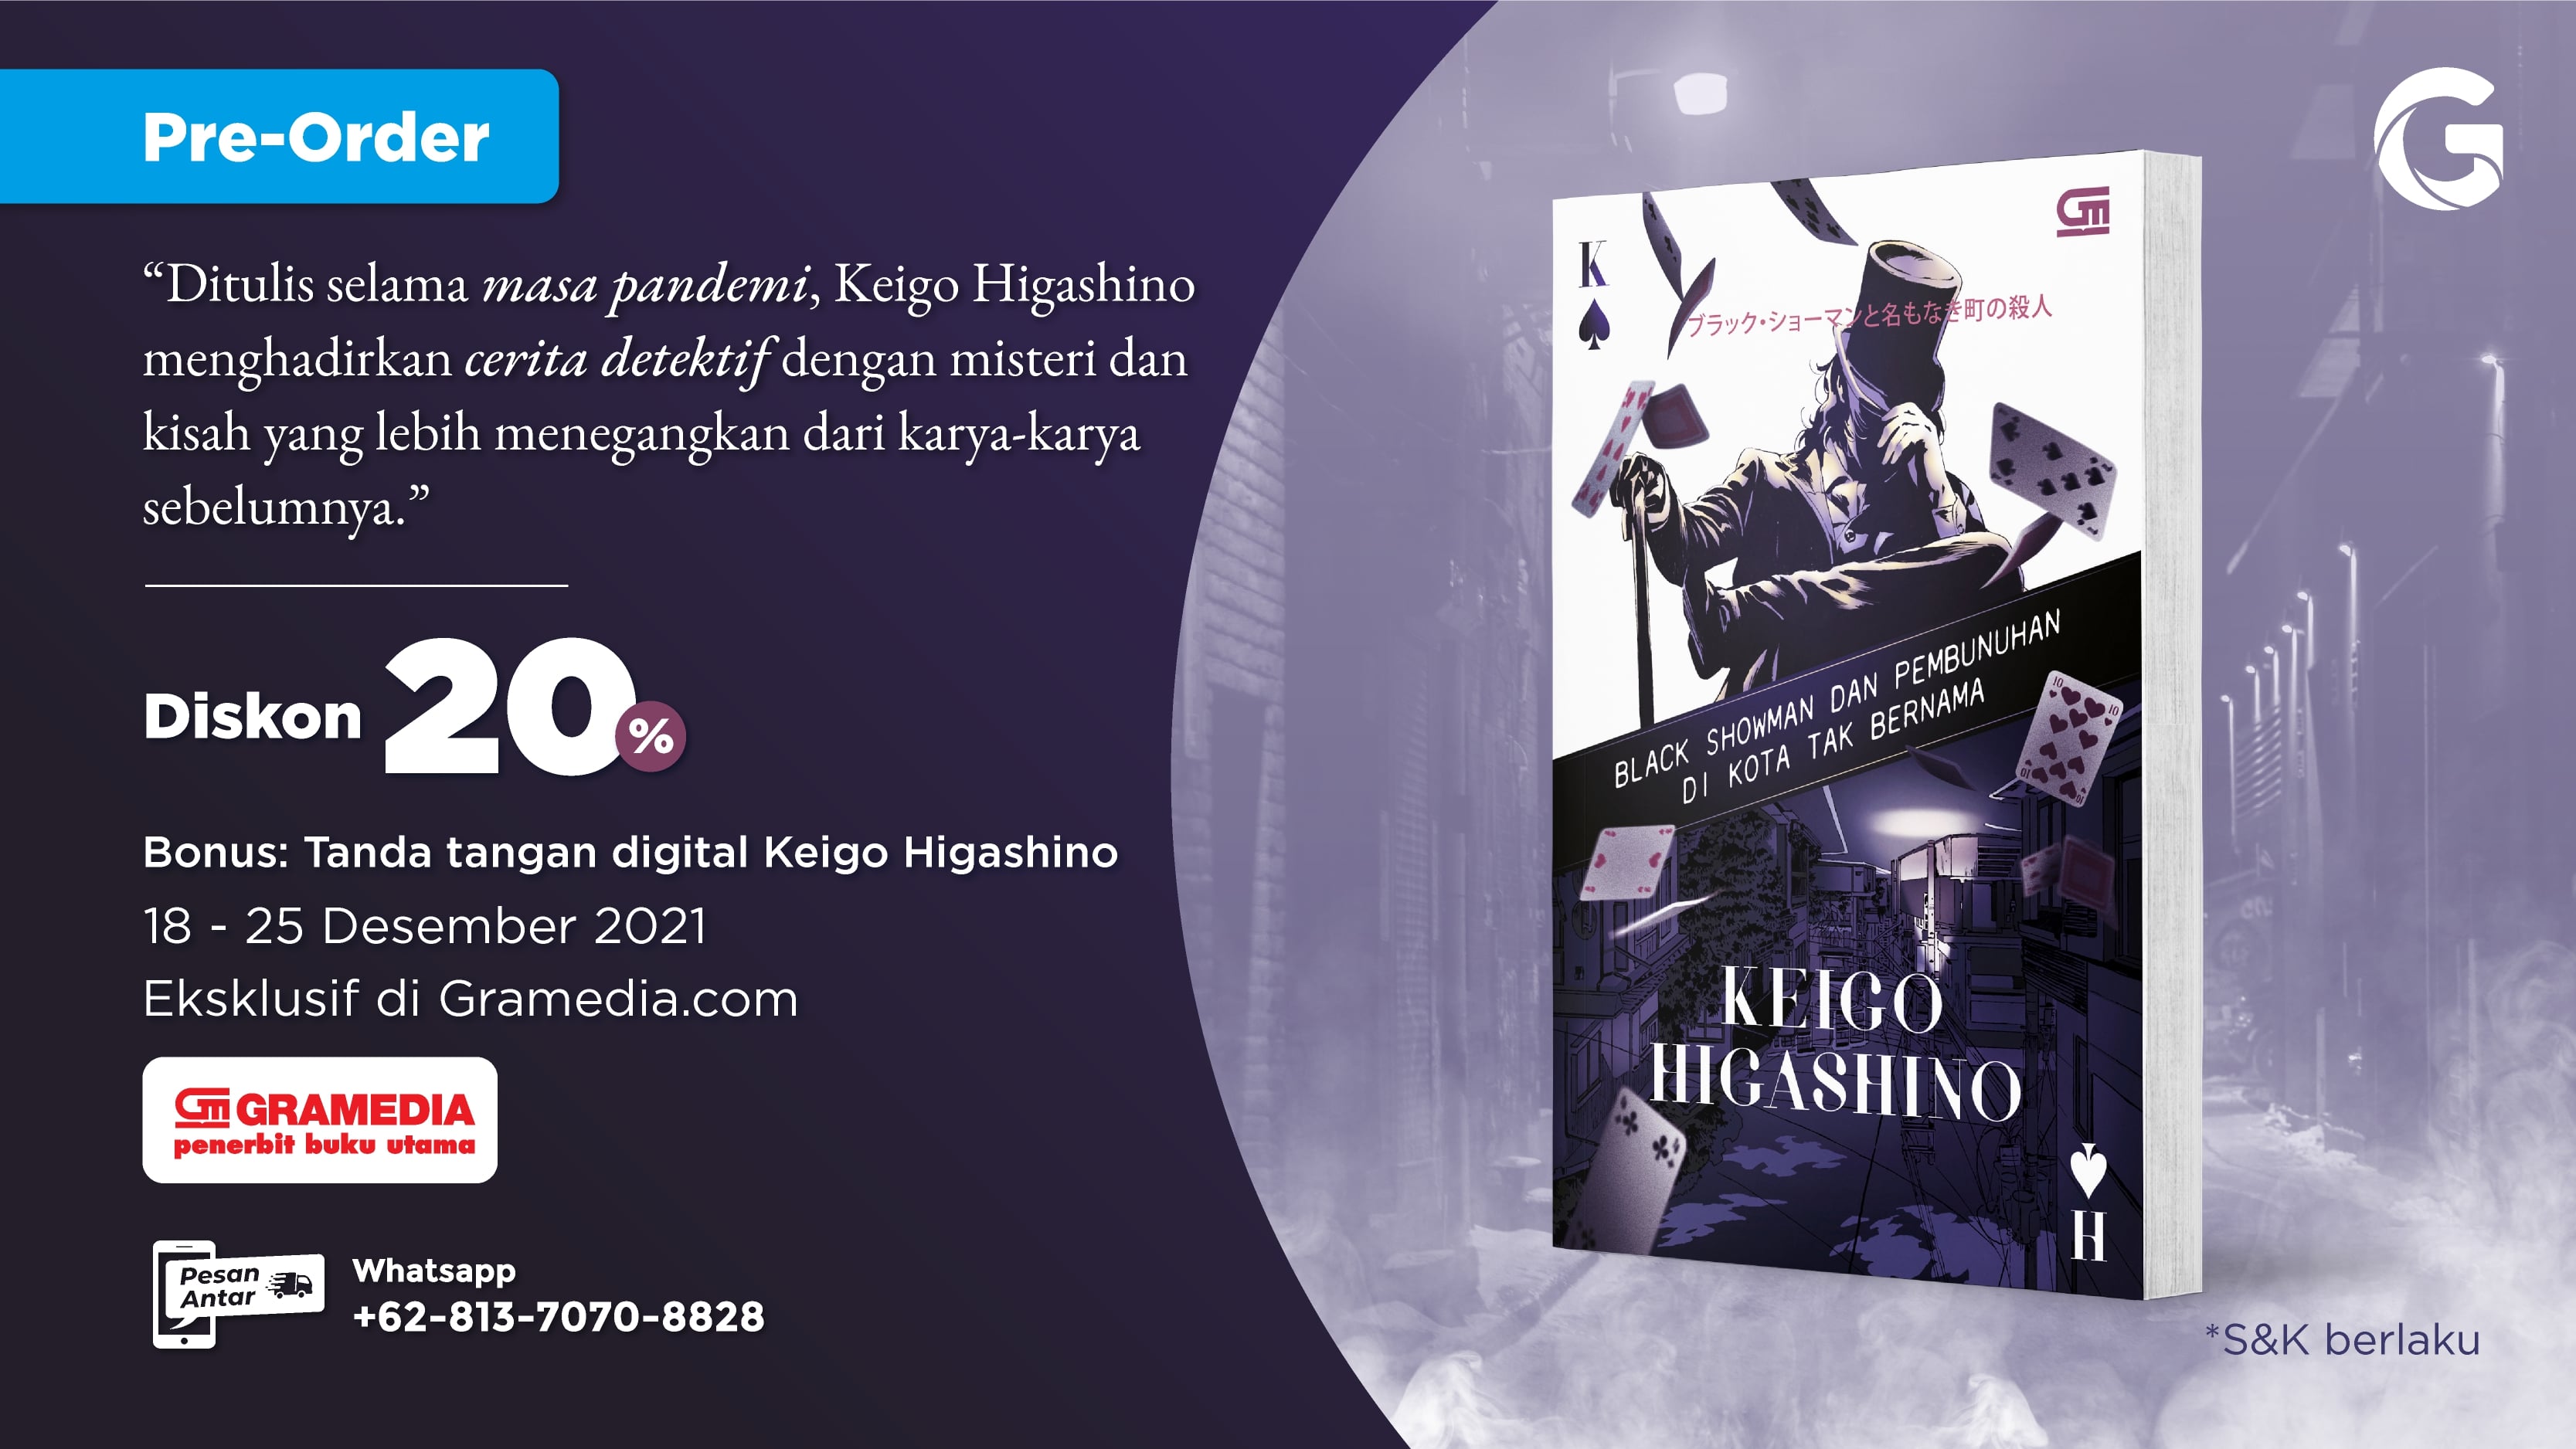 Pre-Order Novel Terbaru Keigo Higashino di Gramedia.com